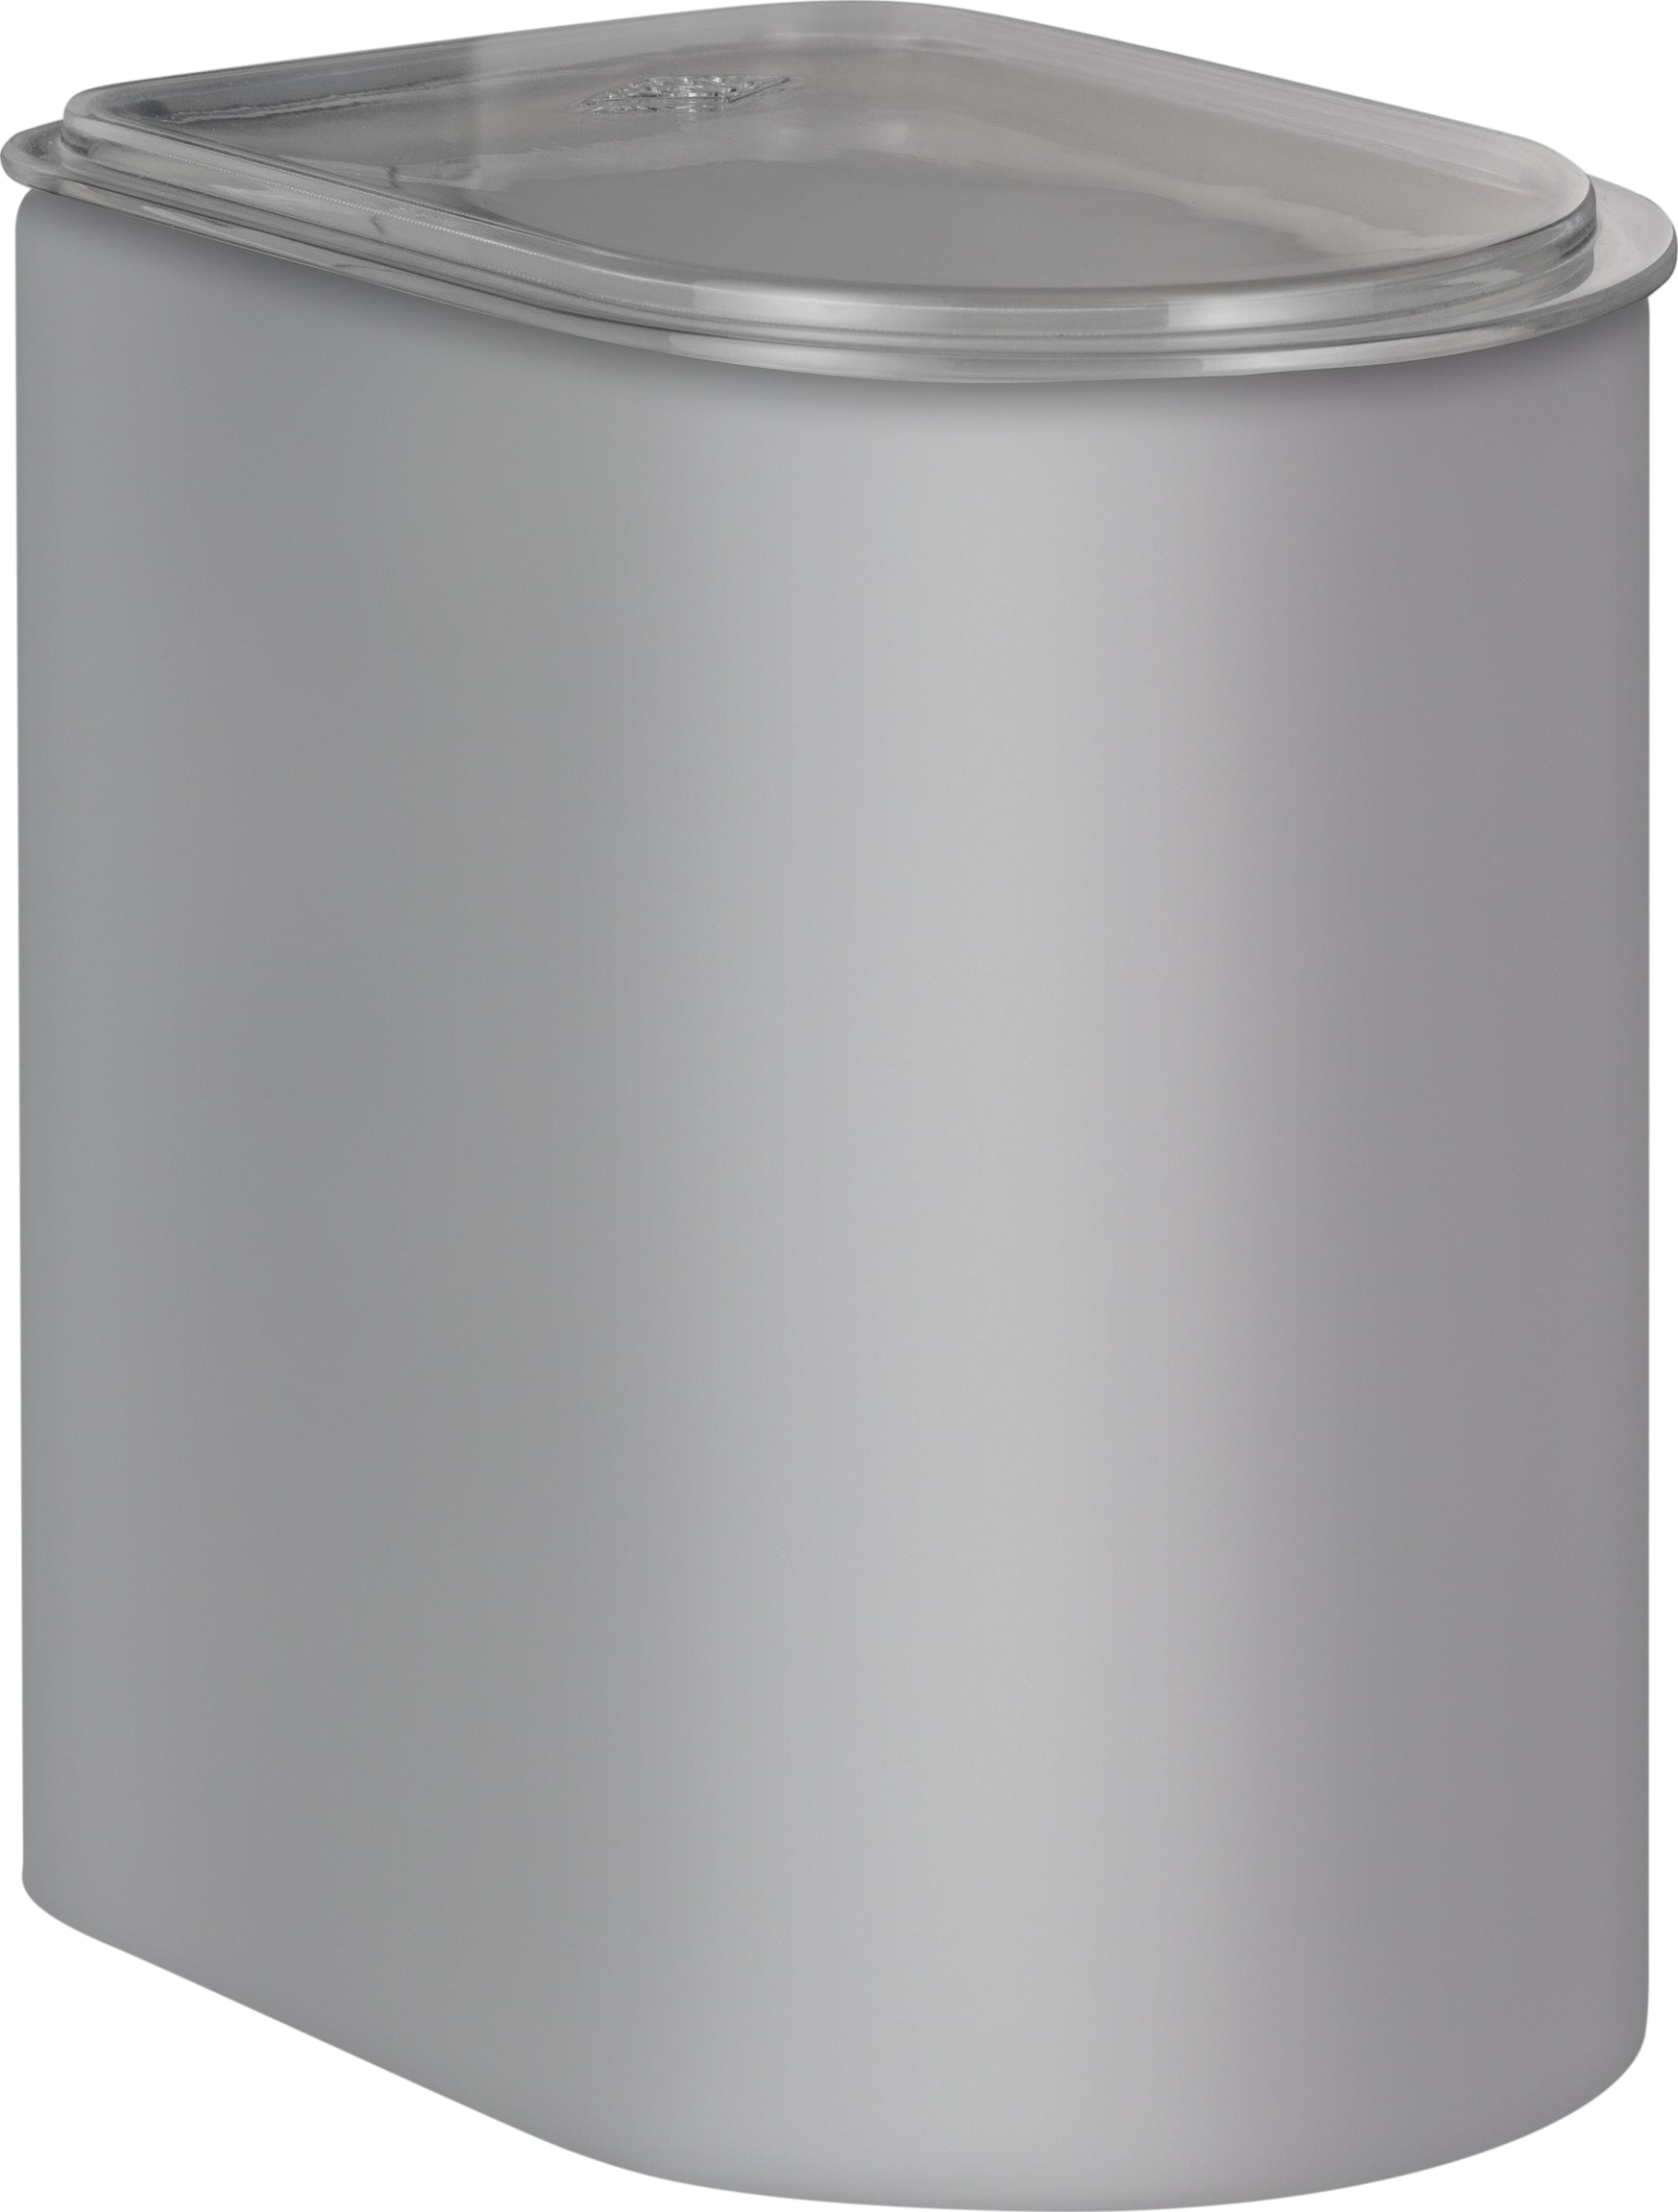 Wesco Canister 2,2 liter med akryllåg, kølig grå Matt